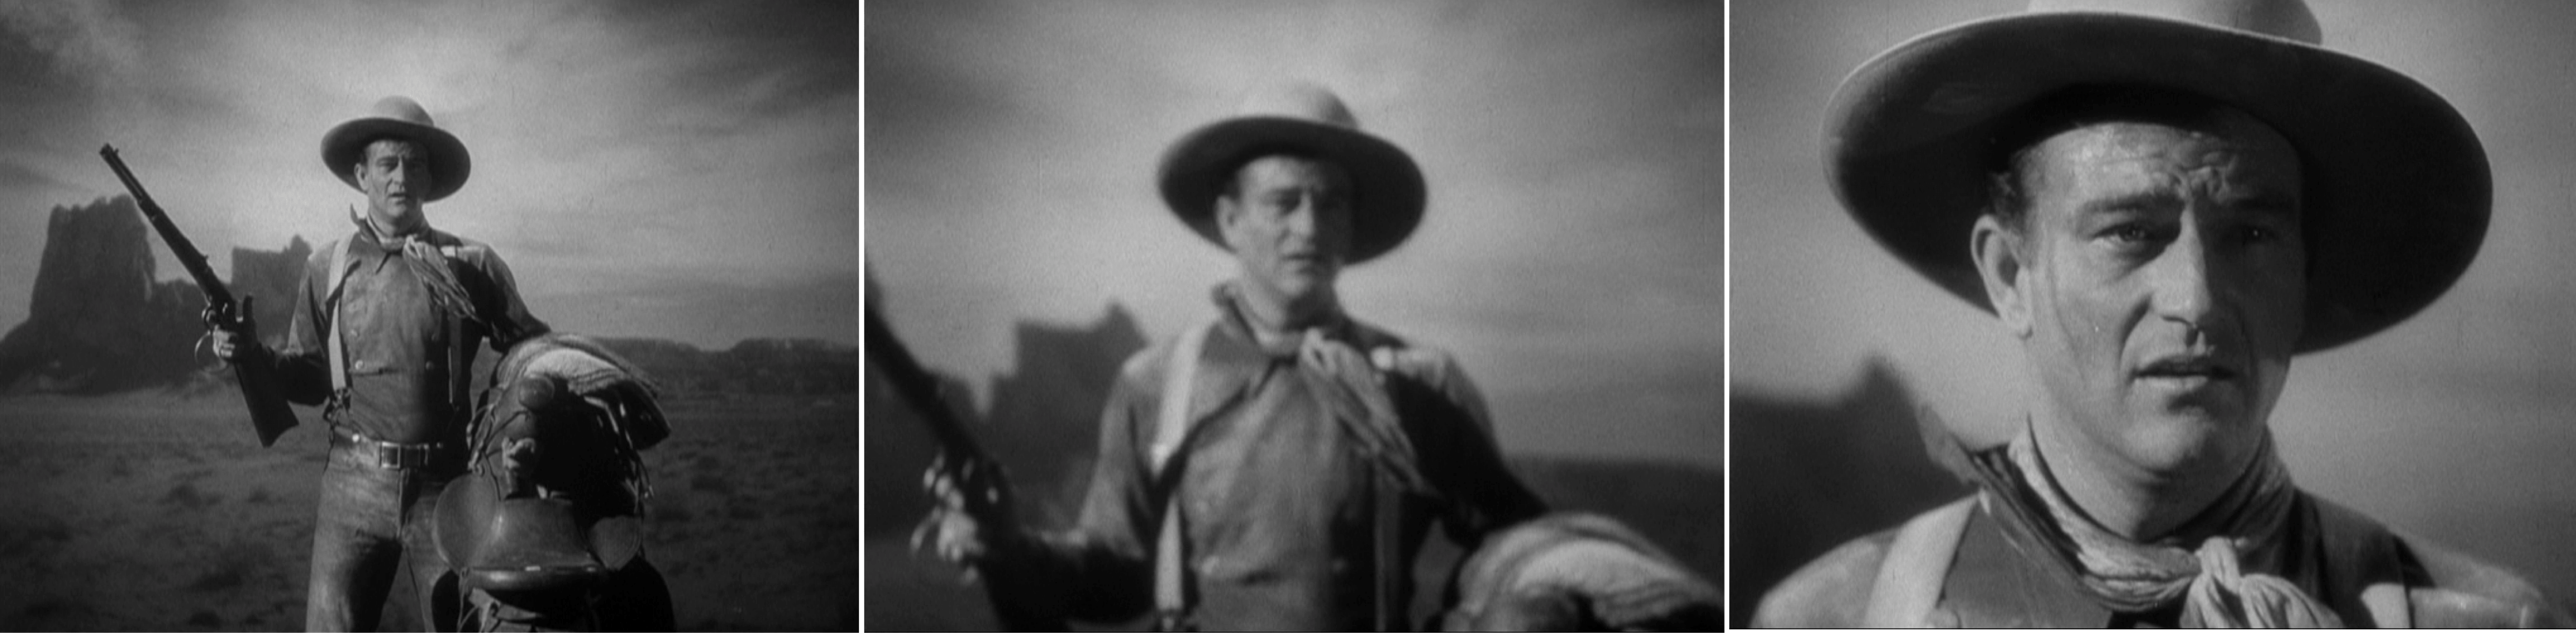 La Chevauchée fantastique (Stagecoach, 1939) de John Ford, édité en vidéo par les éditions Montparnasse.